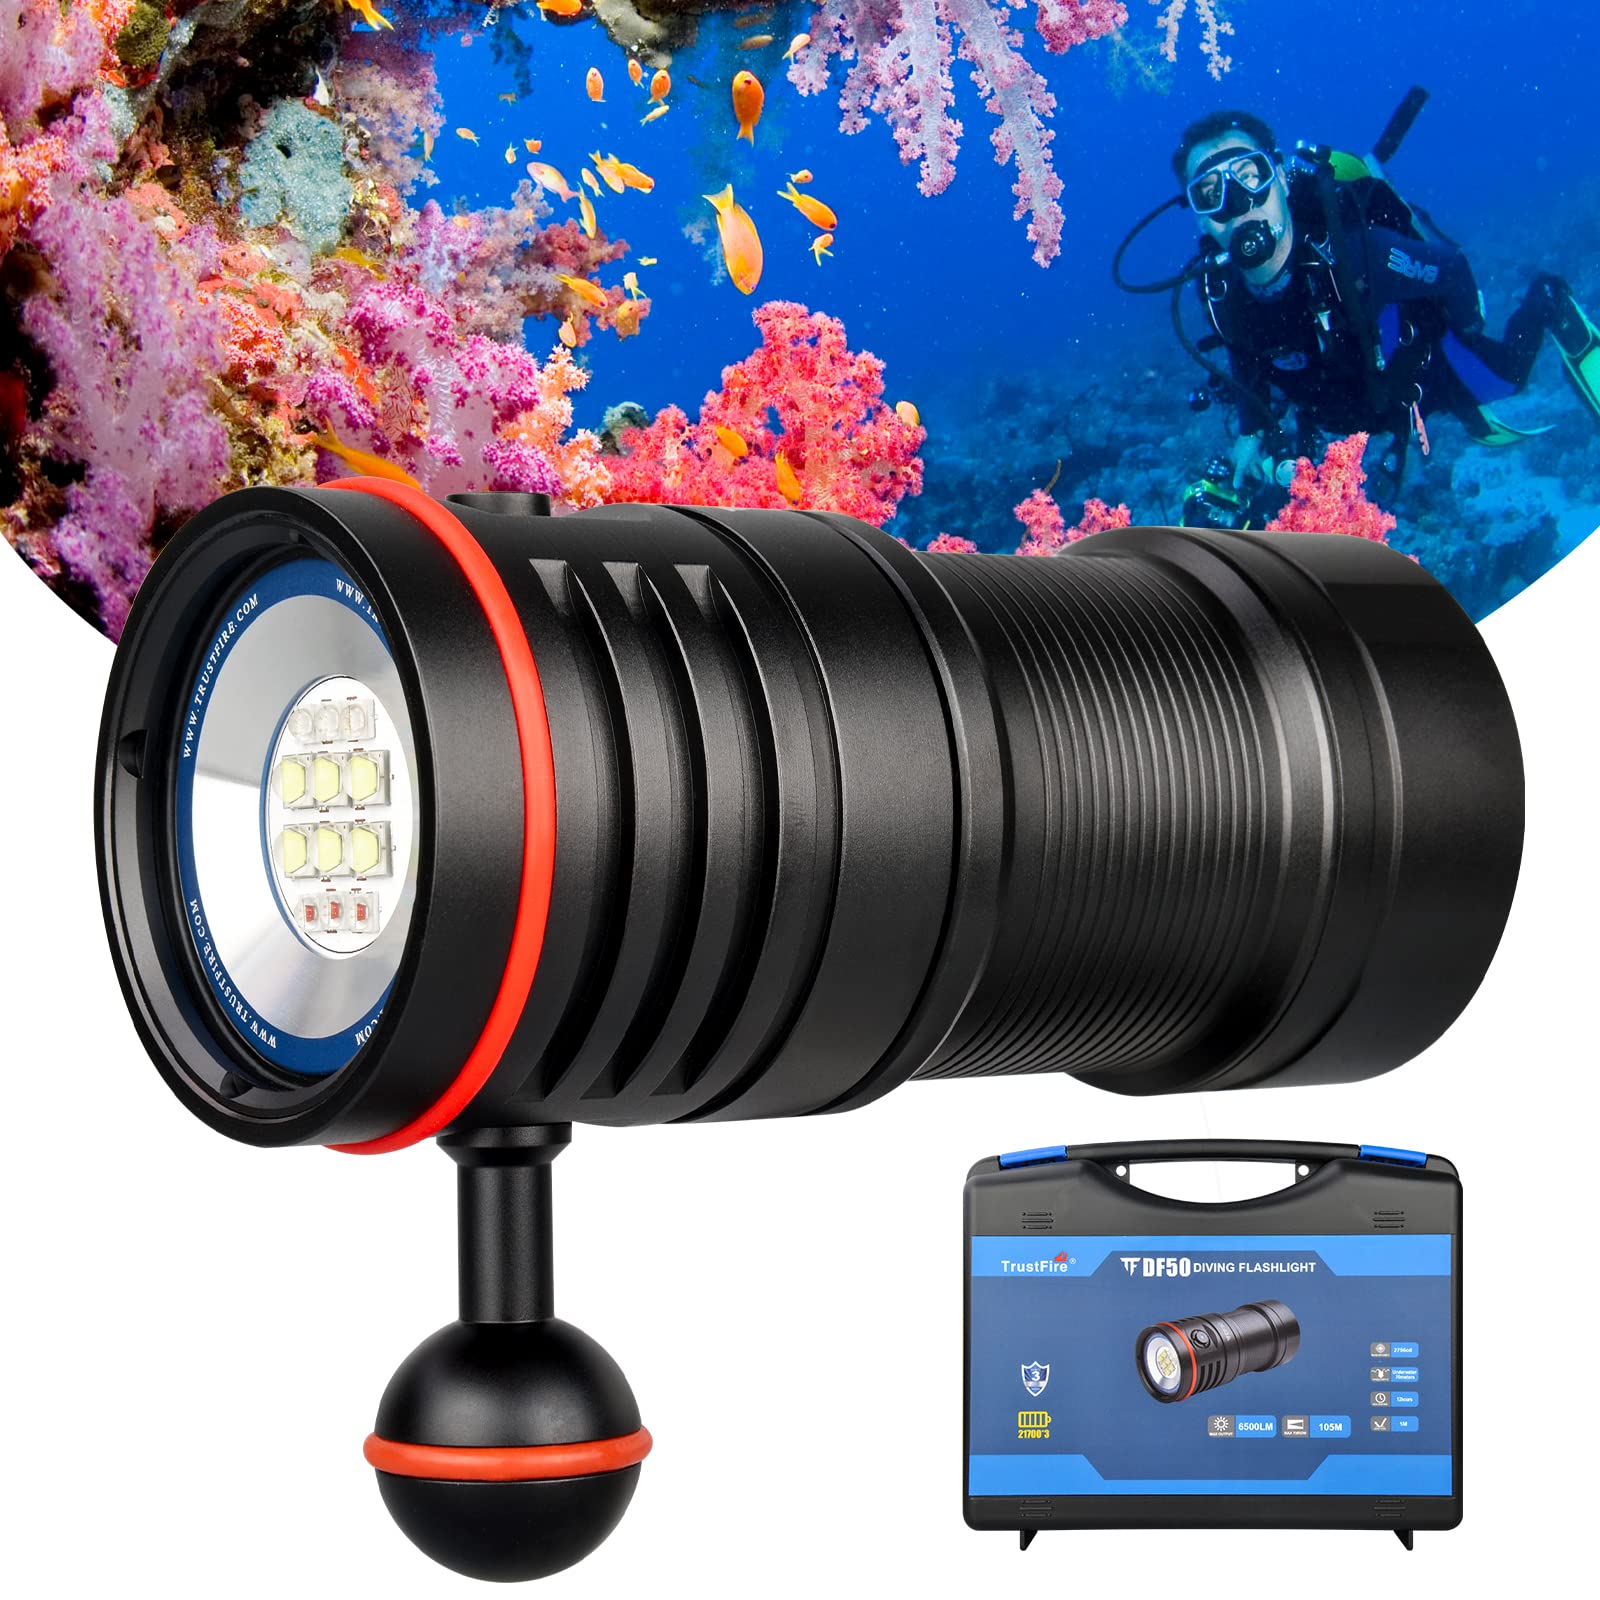 Tauchlampe, TrustFire DF50 KIT Unterwasser Tauchen Taschenlampe 6500 Lumen LED Tauchlampe Professionell Unterwasser Taschenlampe mit Akkupack 70M Wasserdicht Tauchlampe mit 4 Lichtmodi für Fotografie